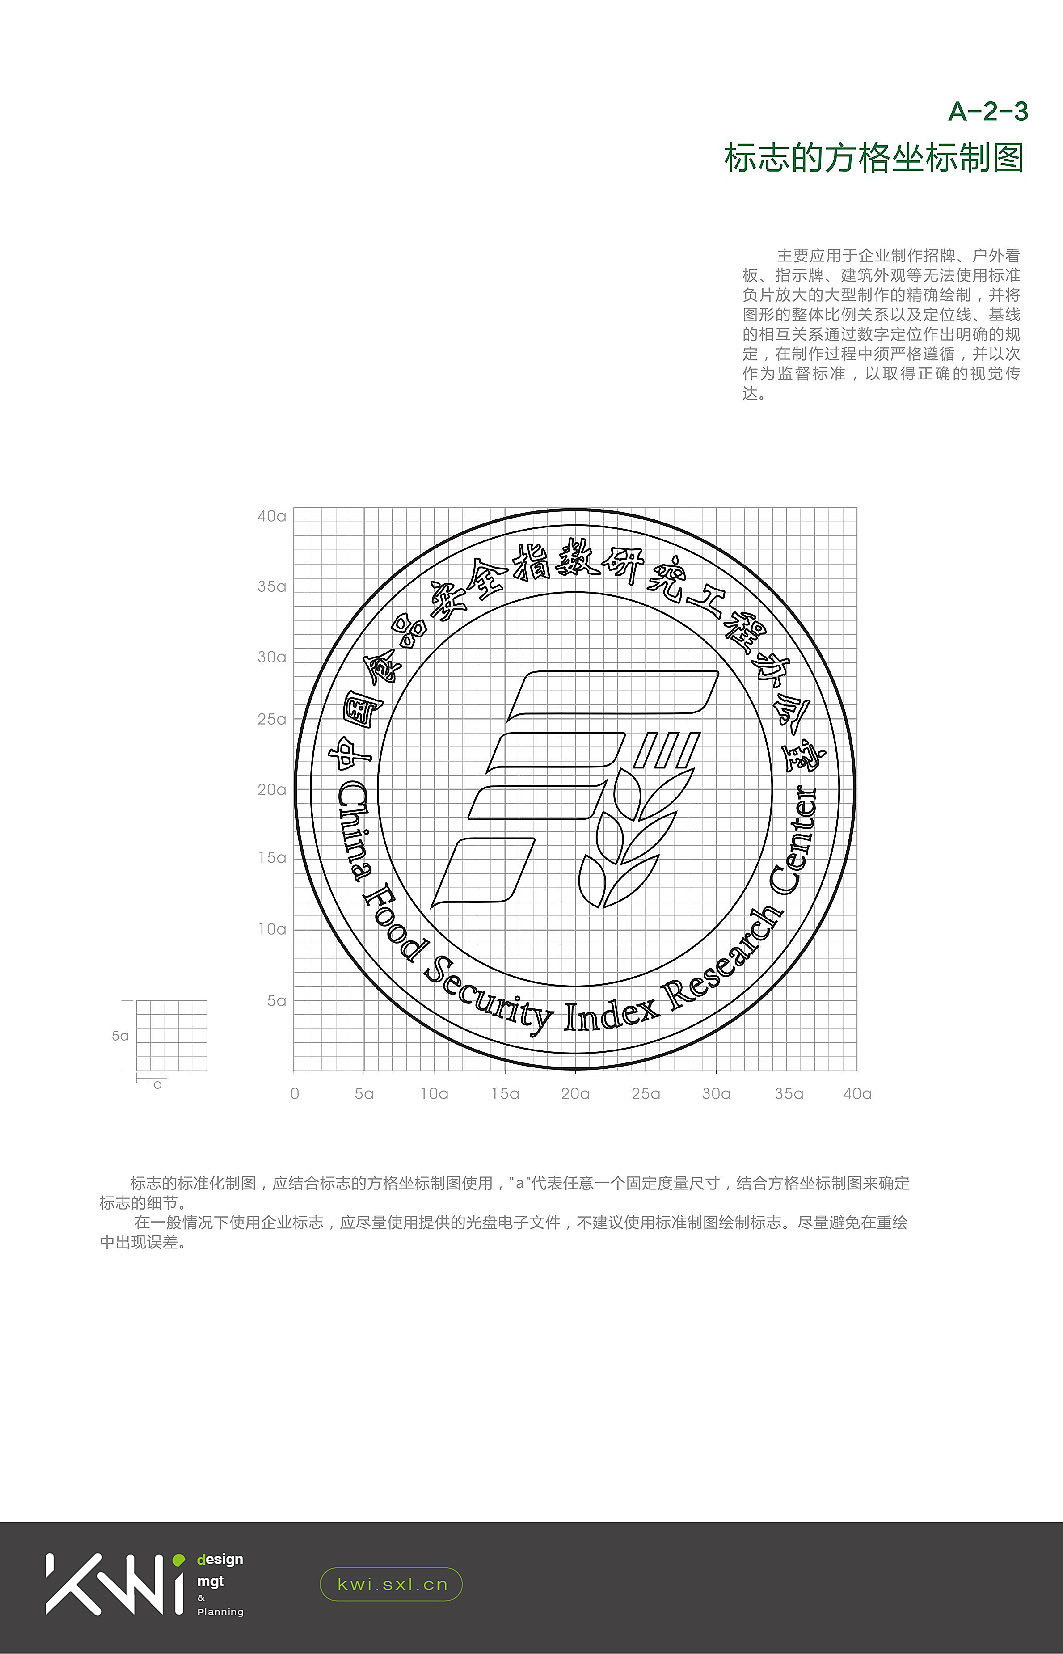 中国食品安全指数研究办公室logo/VI设计图2